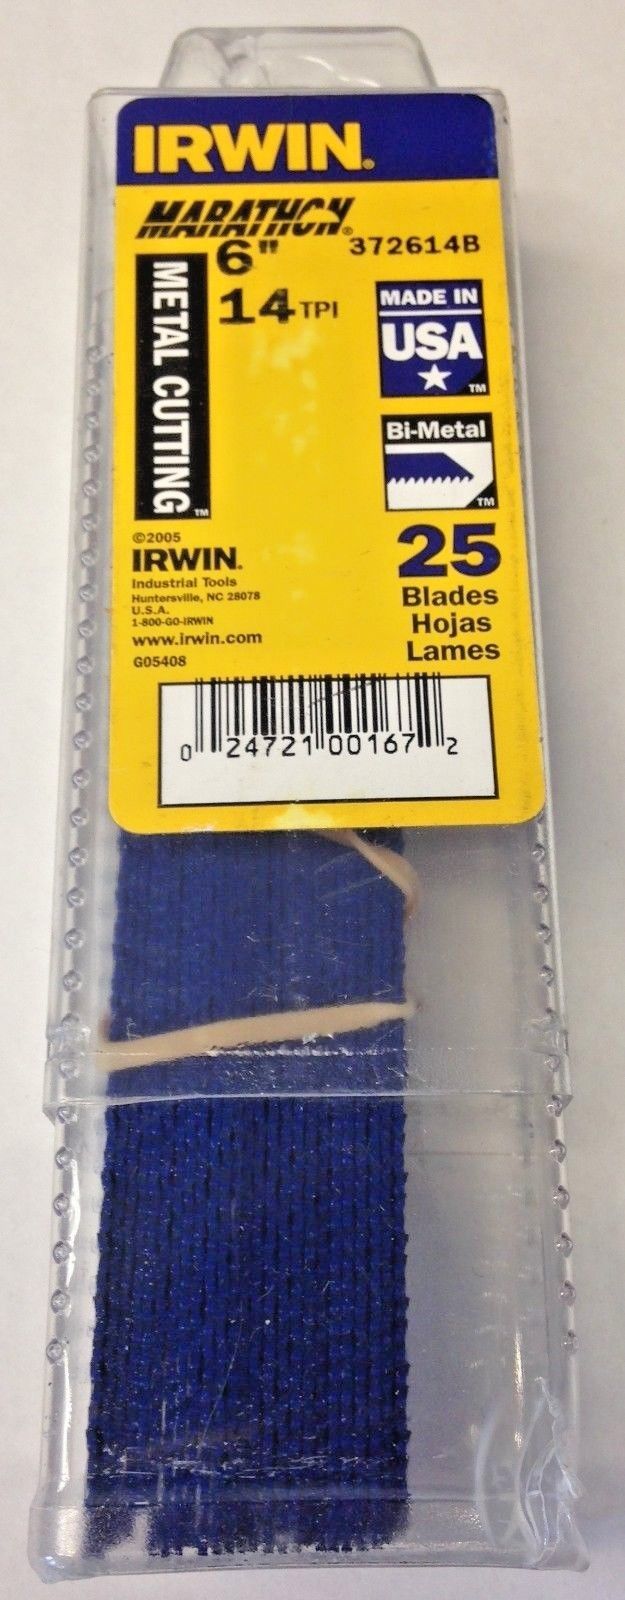 Irwin Marathon 372614B 6" x 14TPI Metal Cutting Reciprocating Blades 25 Pack USA